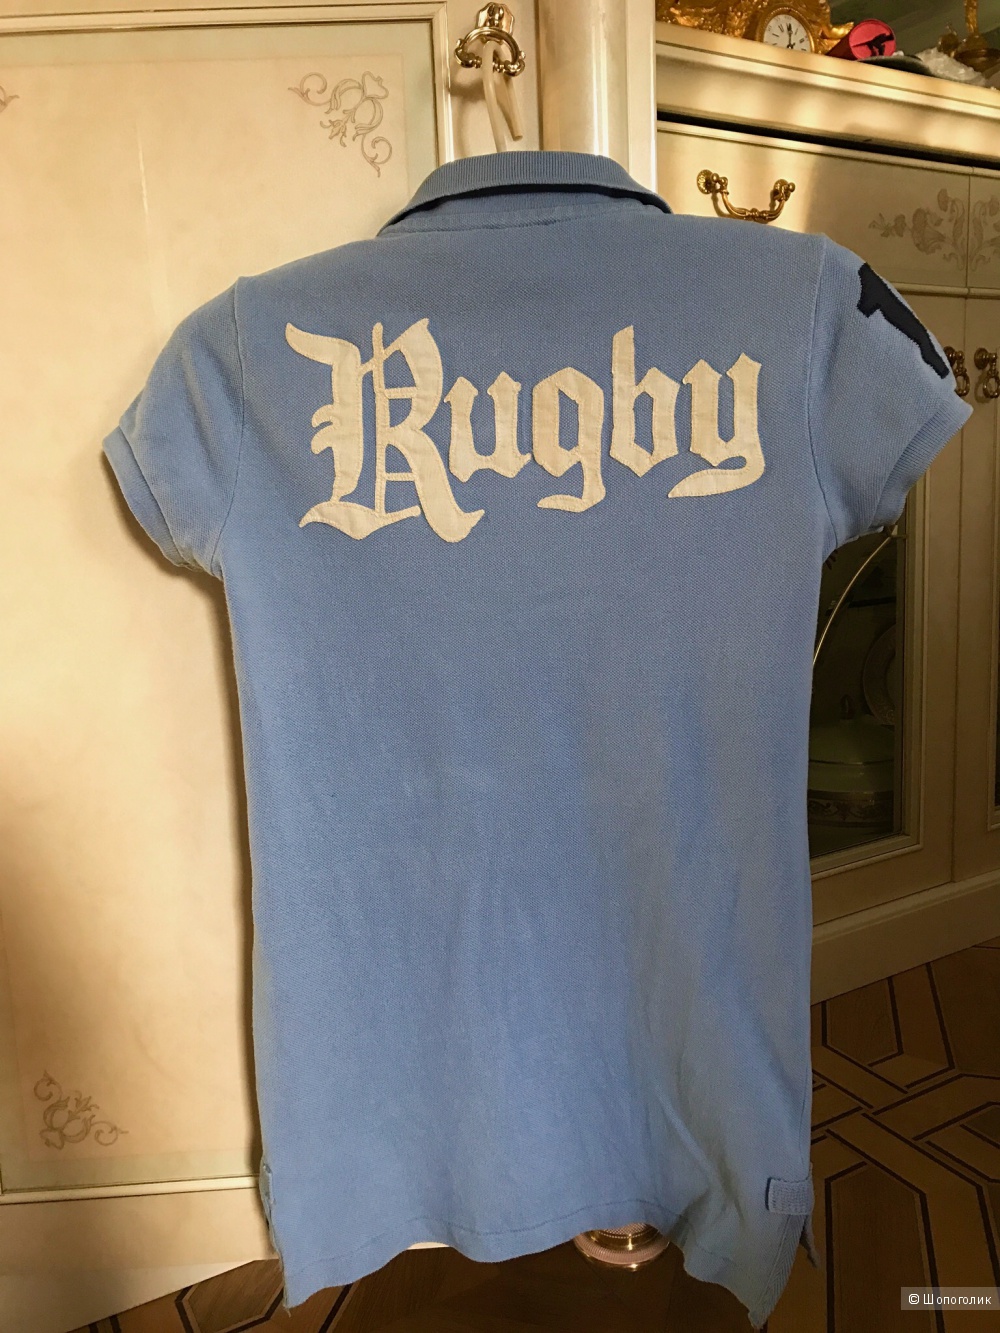 Коллекционное поло Ralph Lauren Rugby xs